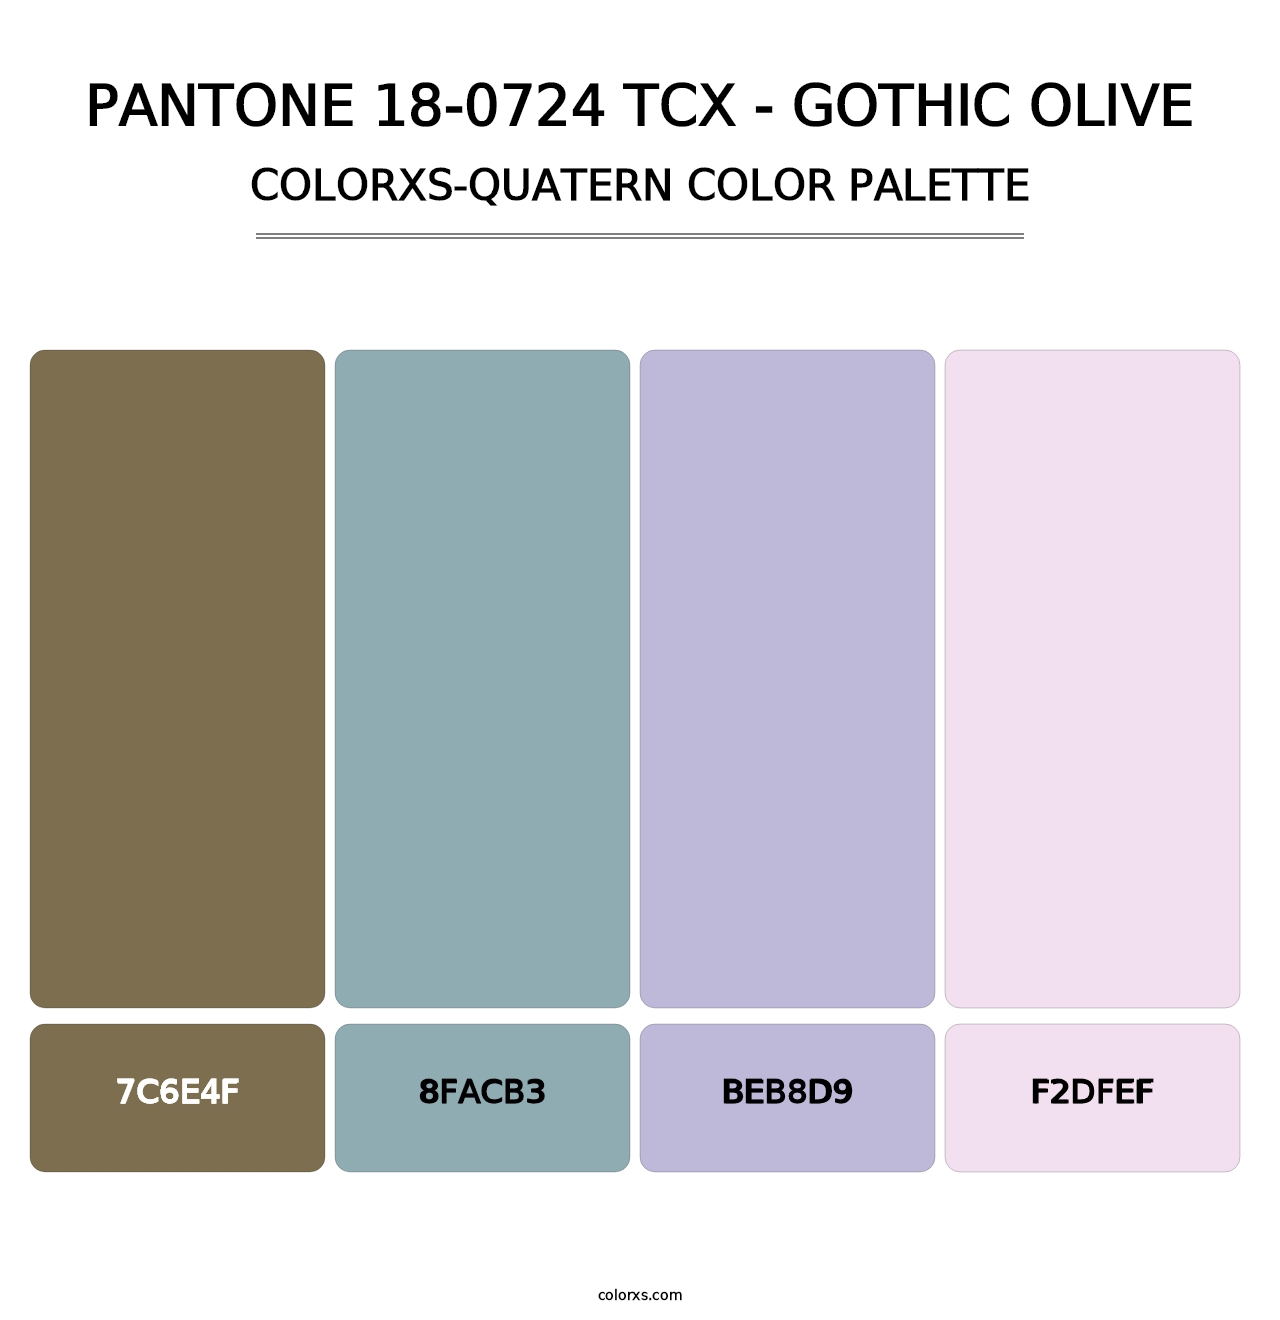 PANTONE 18-0724 TCX - Gothic Olive - Colorxs Quatern Palette